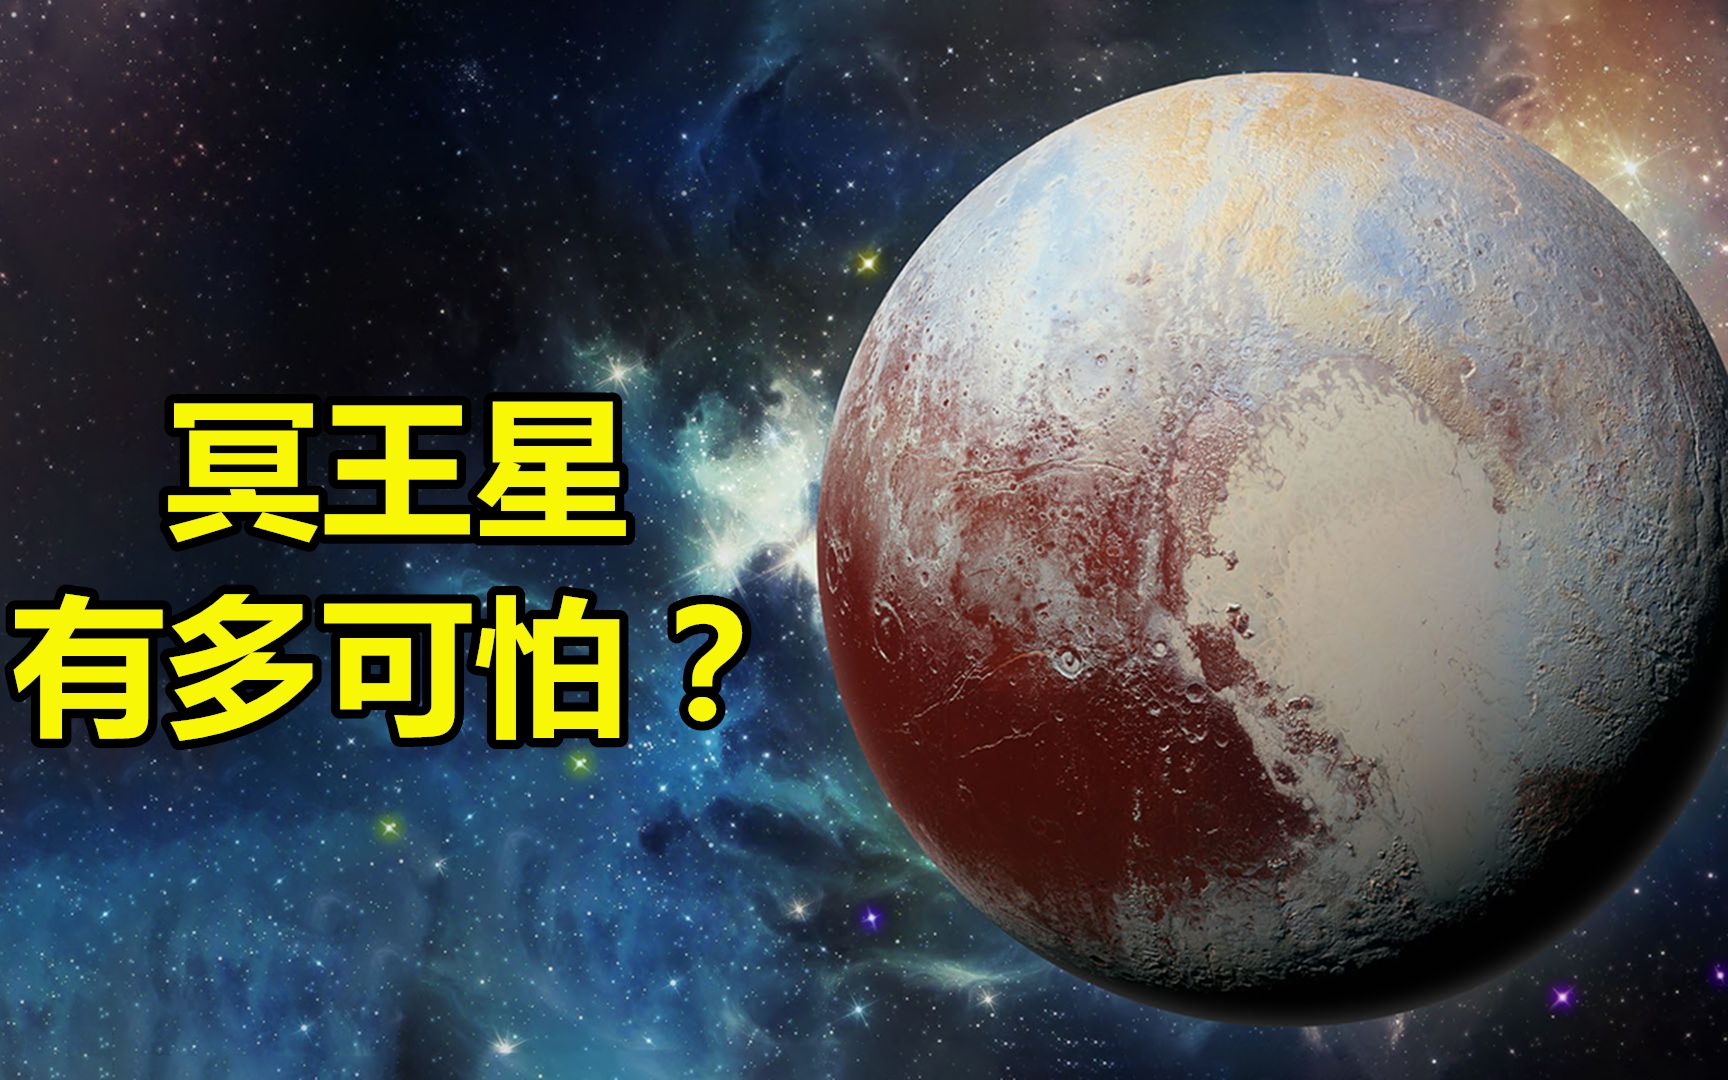 冥王星：太阳系中的神秘小行星！为什么会被踢出行星行列？ - 哔哩哔哩